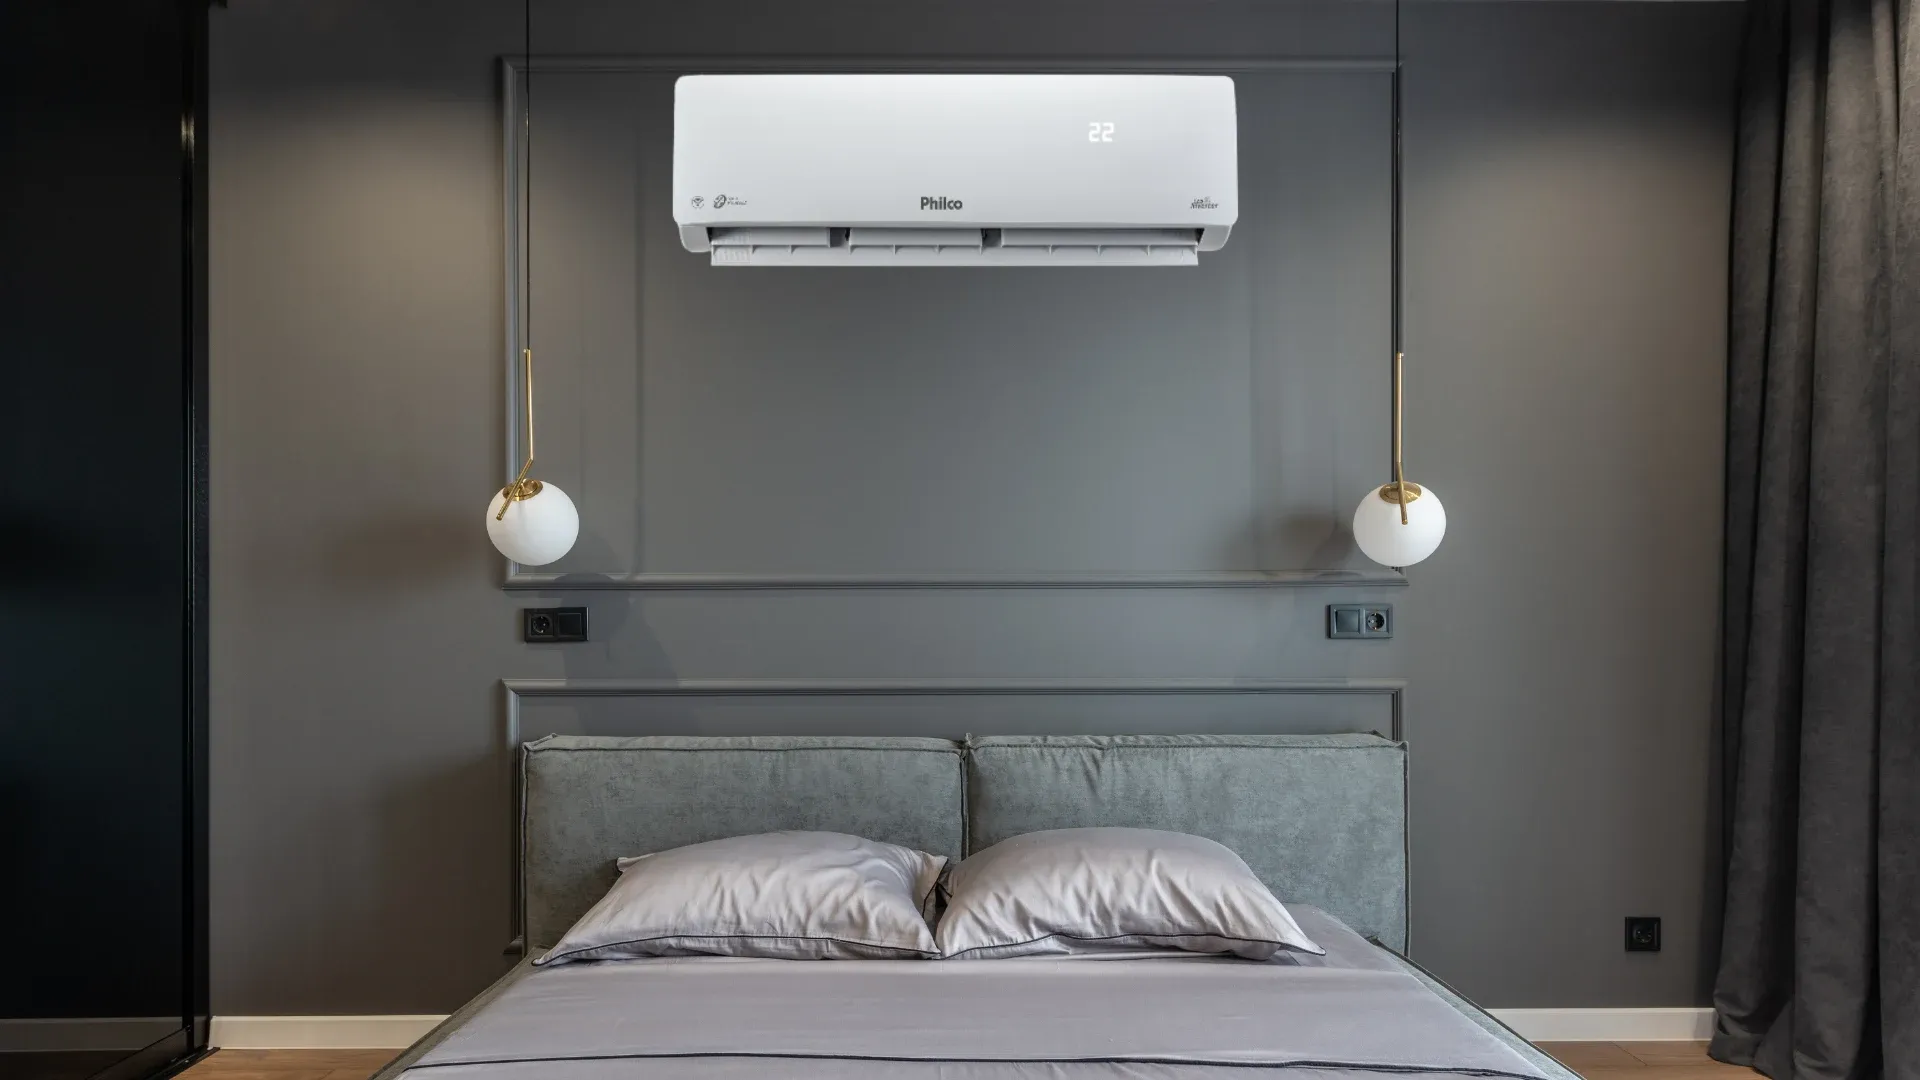 Ar-condicionado Philco Eco Inverter em parede preta sobre cama